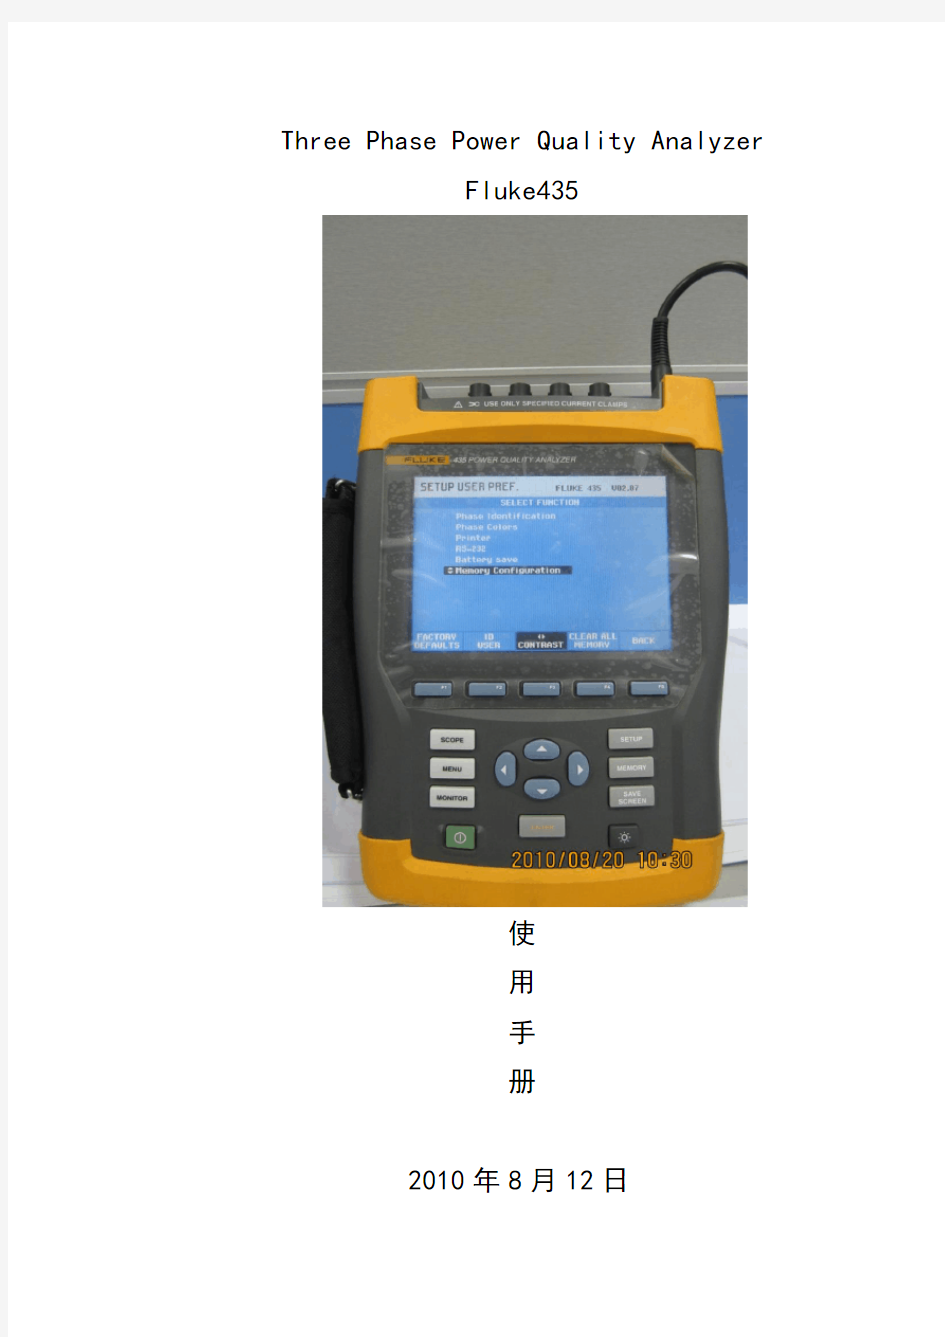 FLUKE435电能质量测试仪使用手册